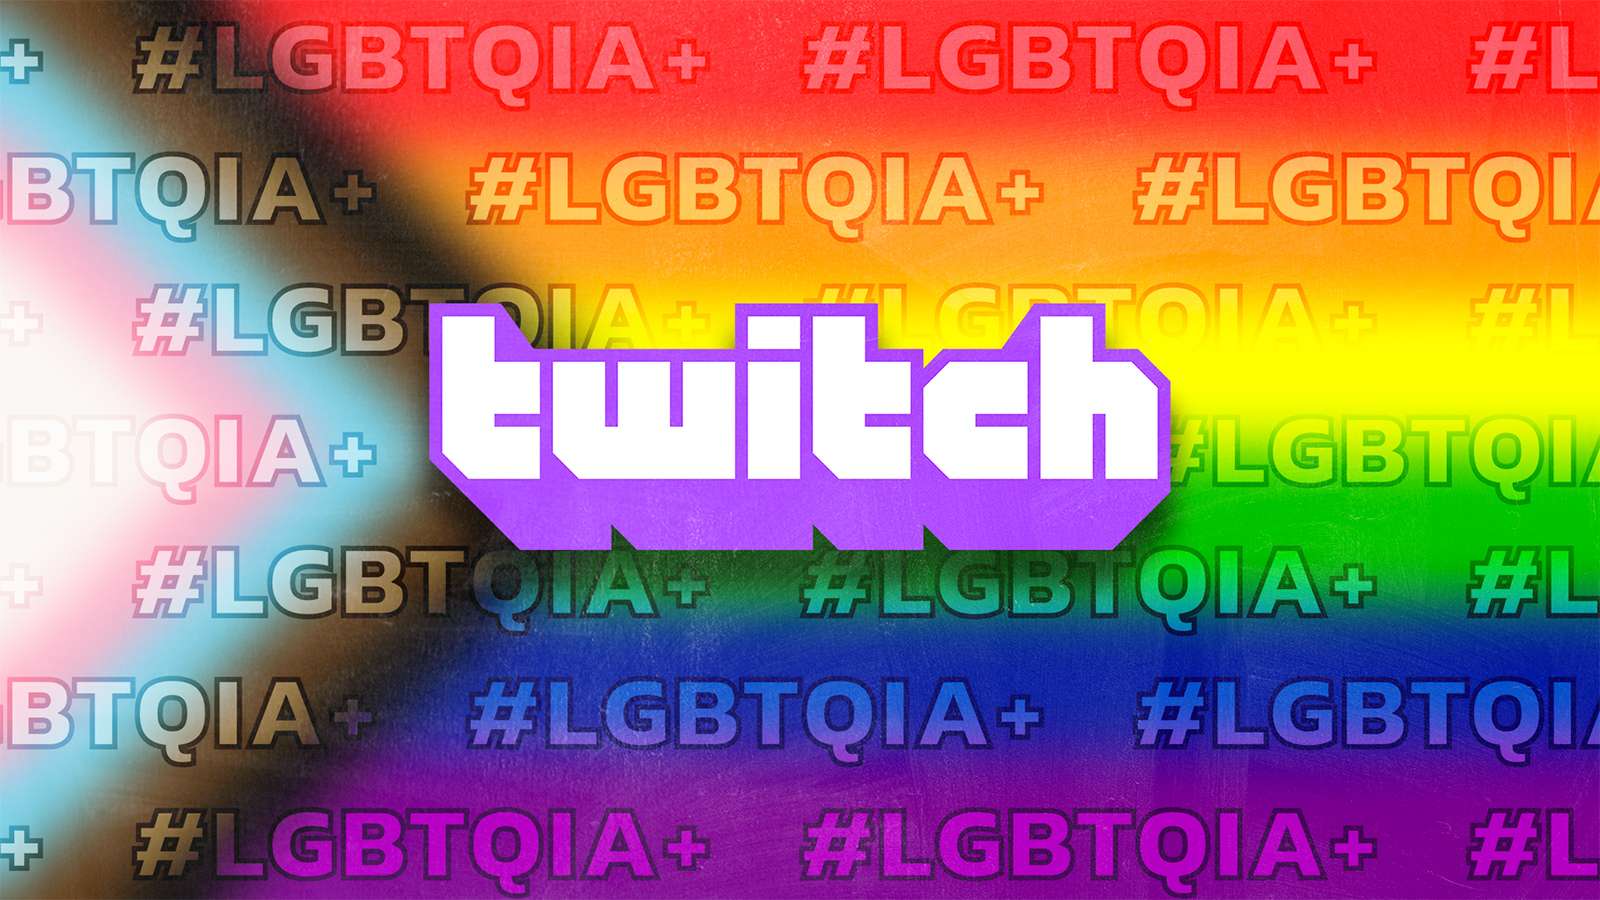 A screenshot of the LGBTQIA+ tag on Twitch